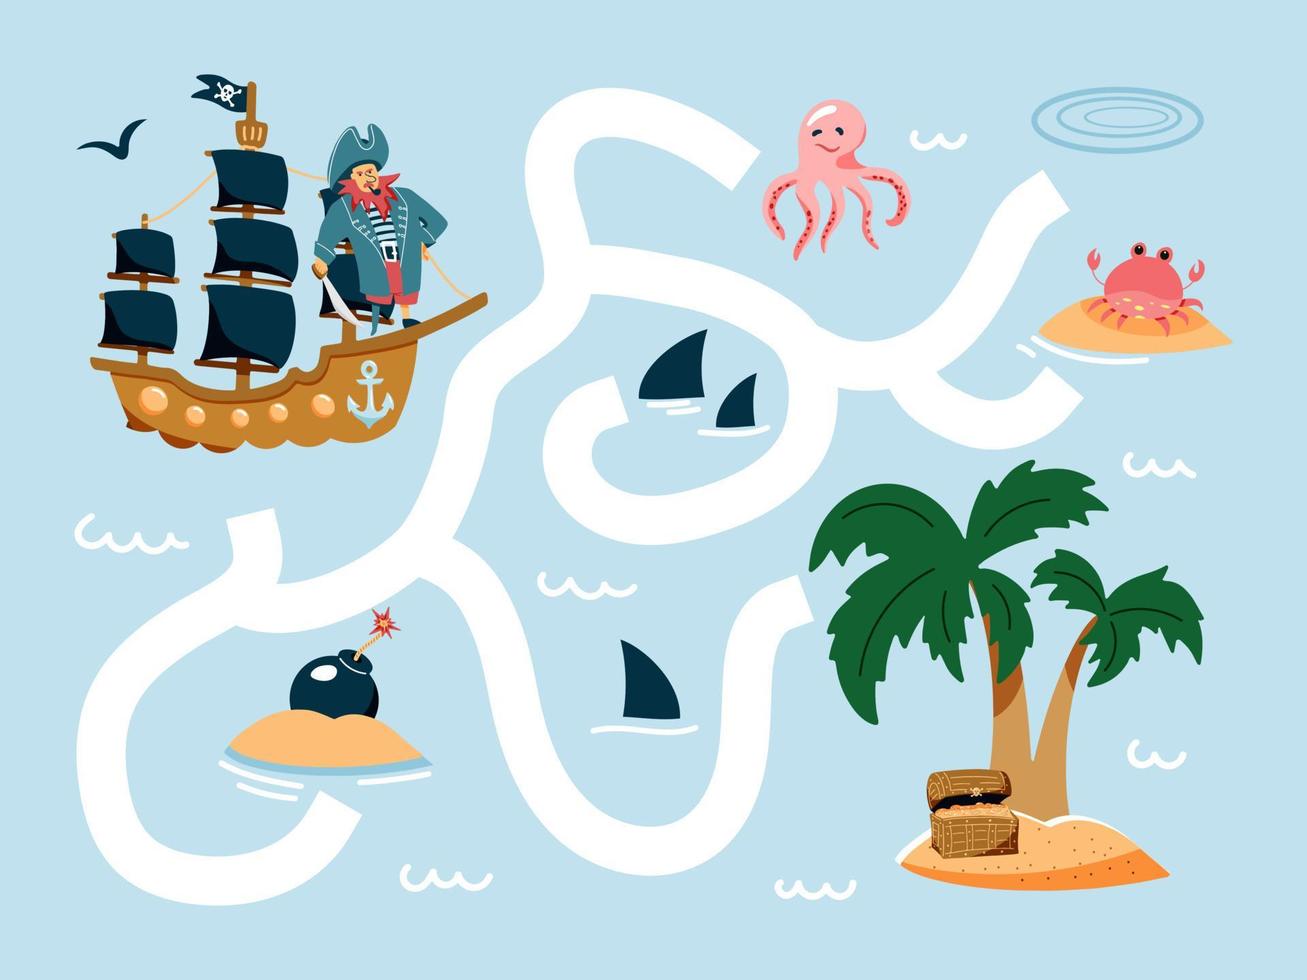 hjälp piratskeppet att hitta vägen till ön. söt tecknad pirat labyrintspel. labyrint. roligt spel för barn utbildning. vektor illustration